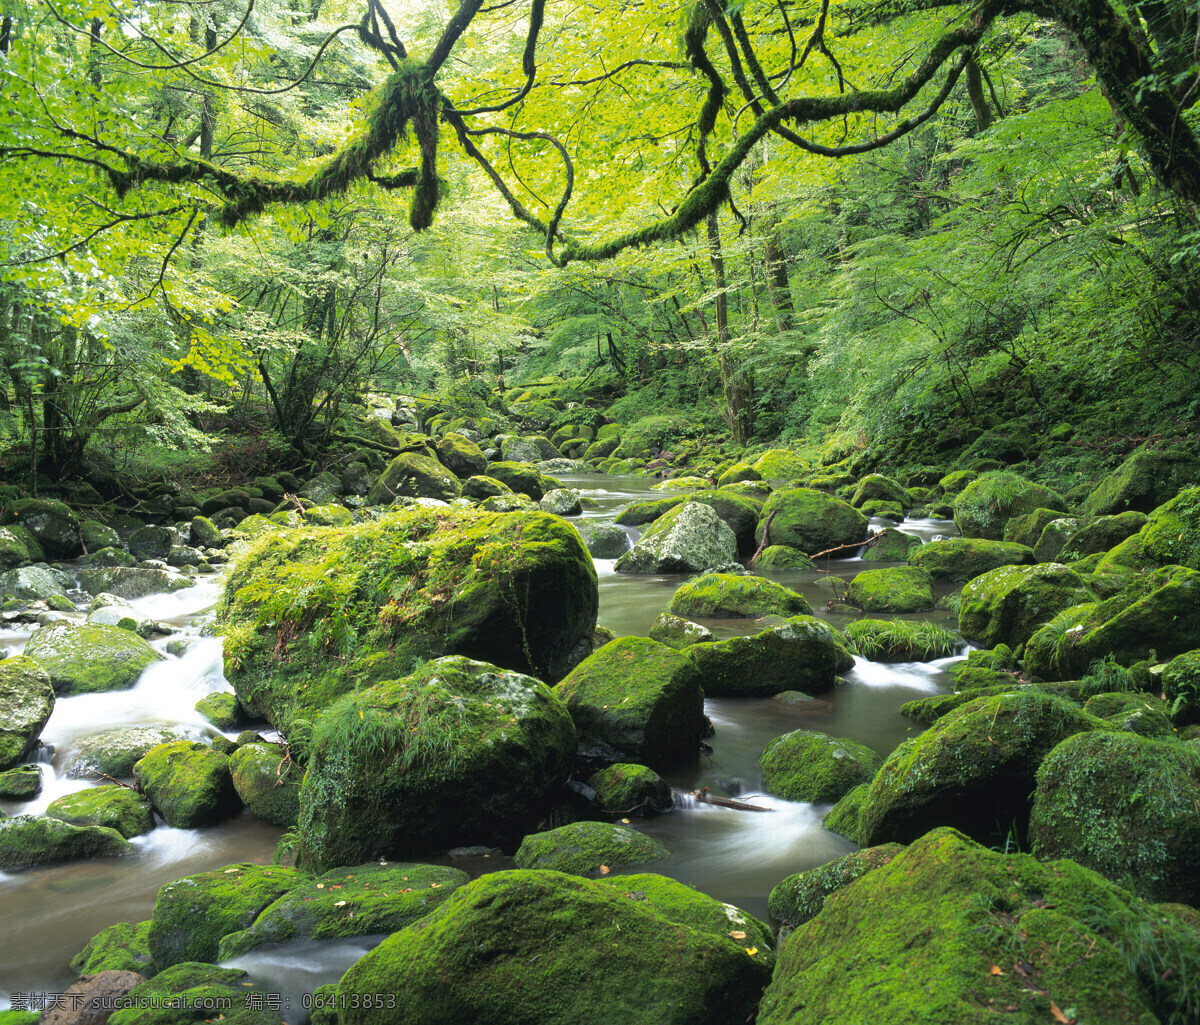 瀑布流水 茂密 森林 树木 丛林 山川 河流 旅游摄影 国内旅游 石头 自然风景 山水风景 自然景观